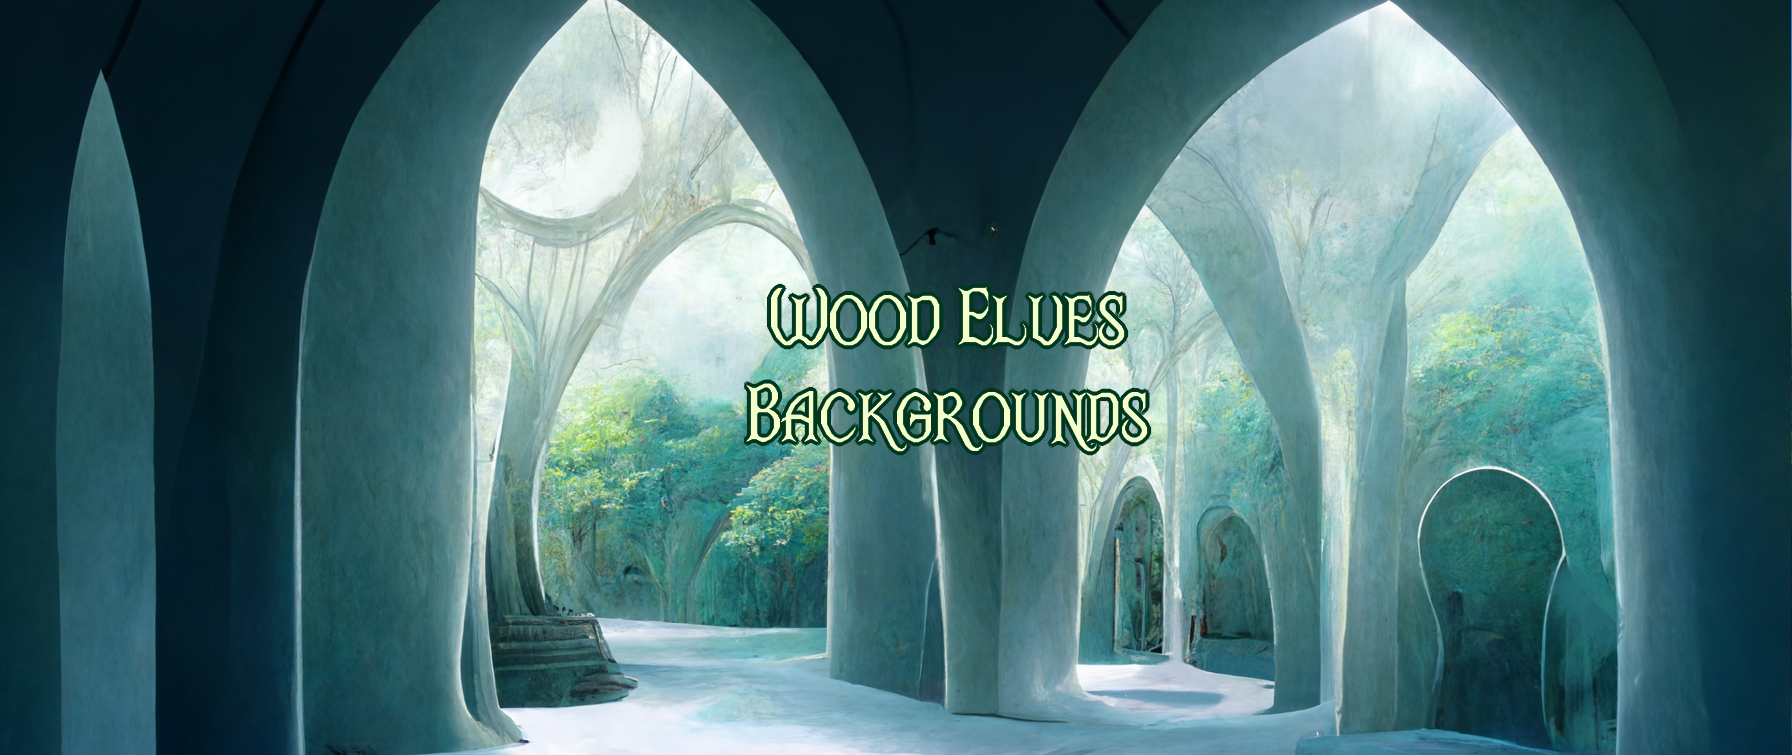 Wood Elves Backgrounds